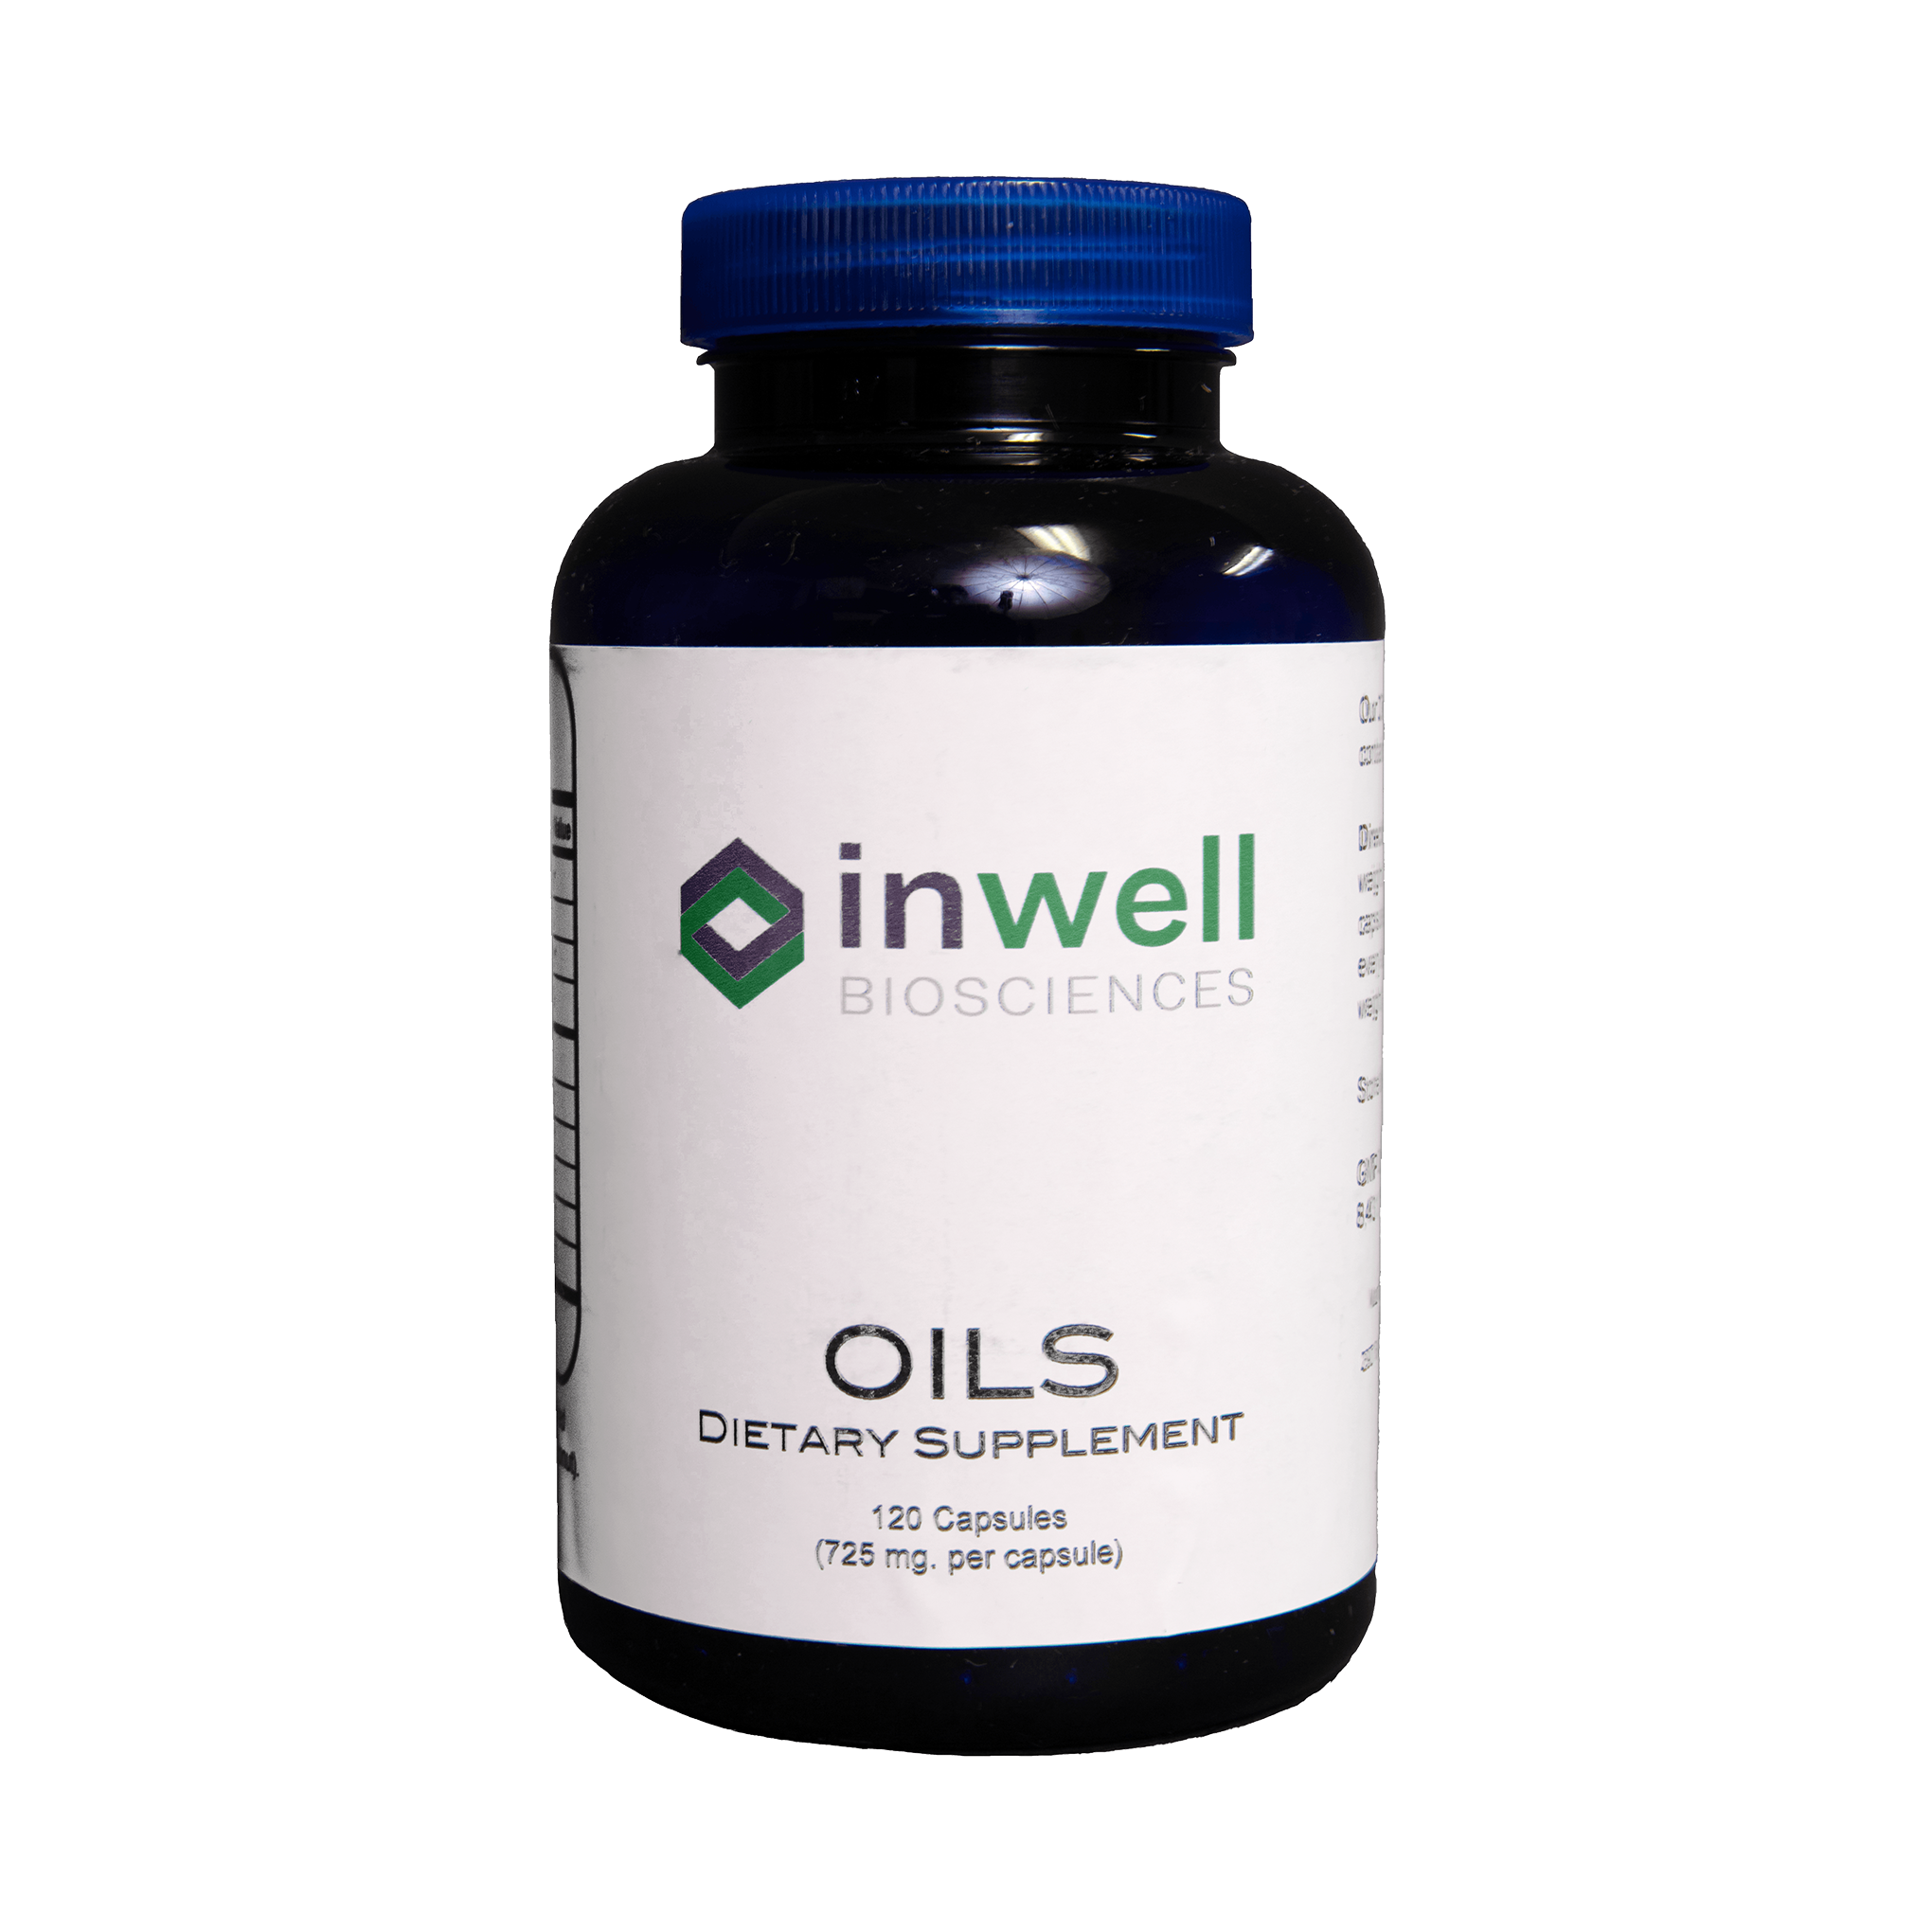 Oils - Inwell Biosciences